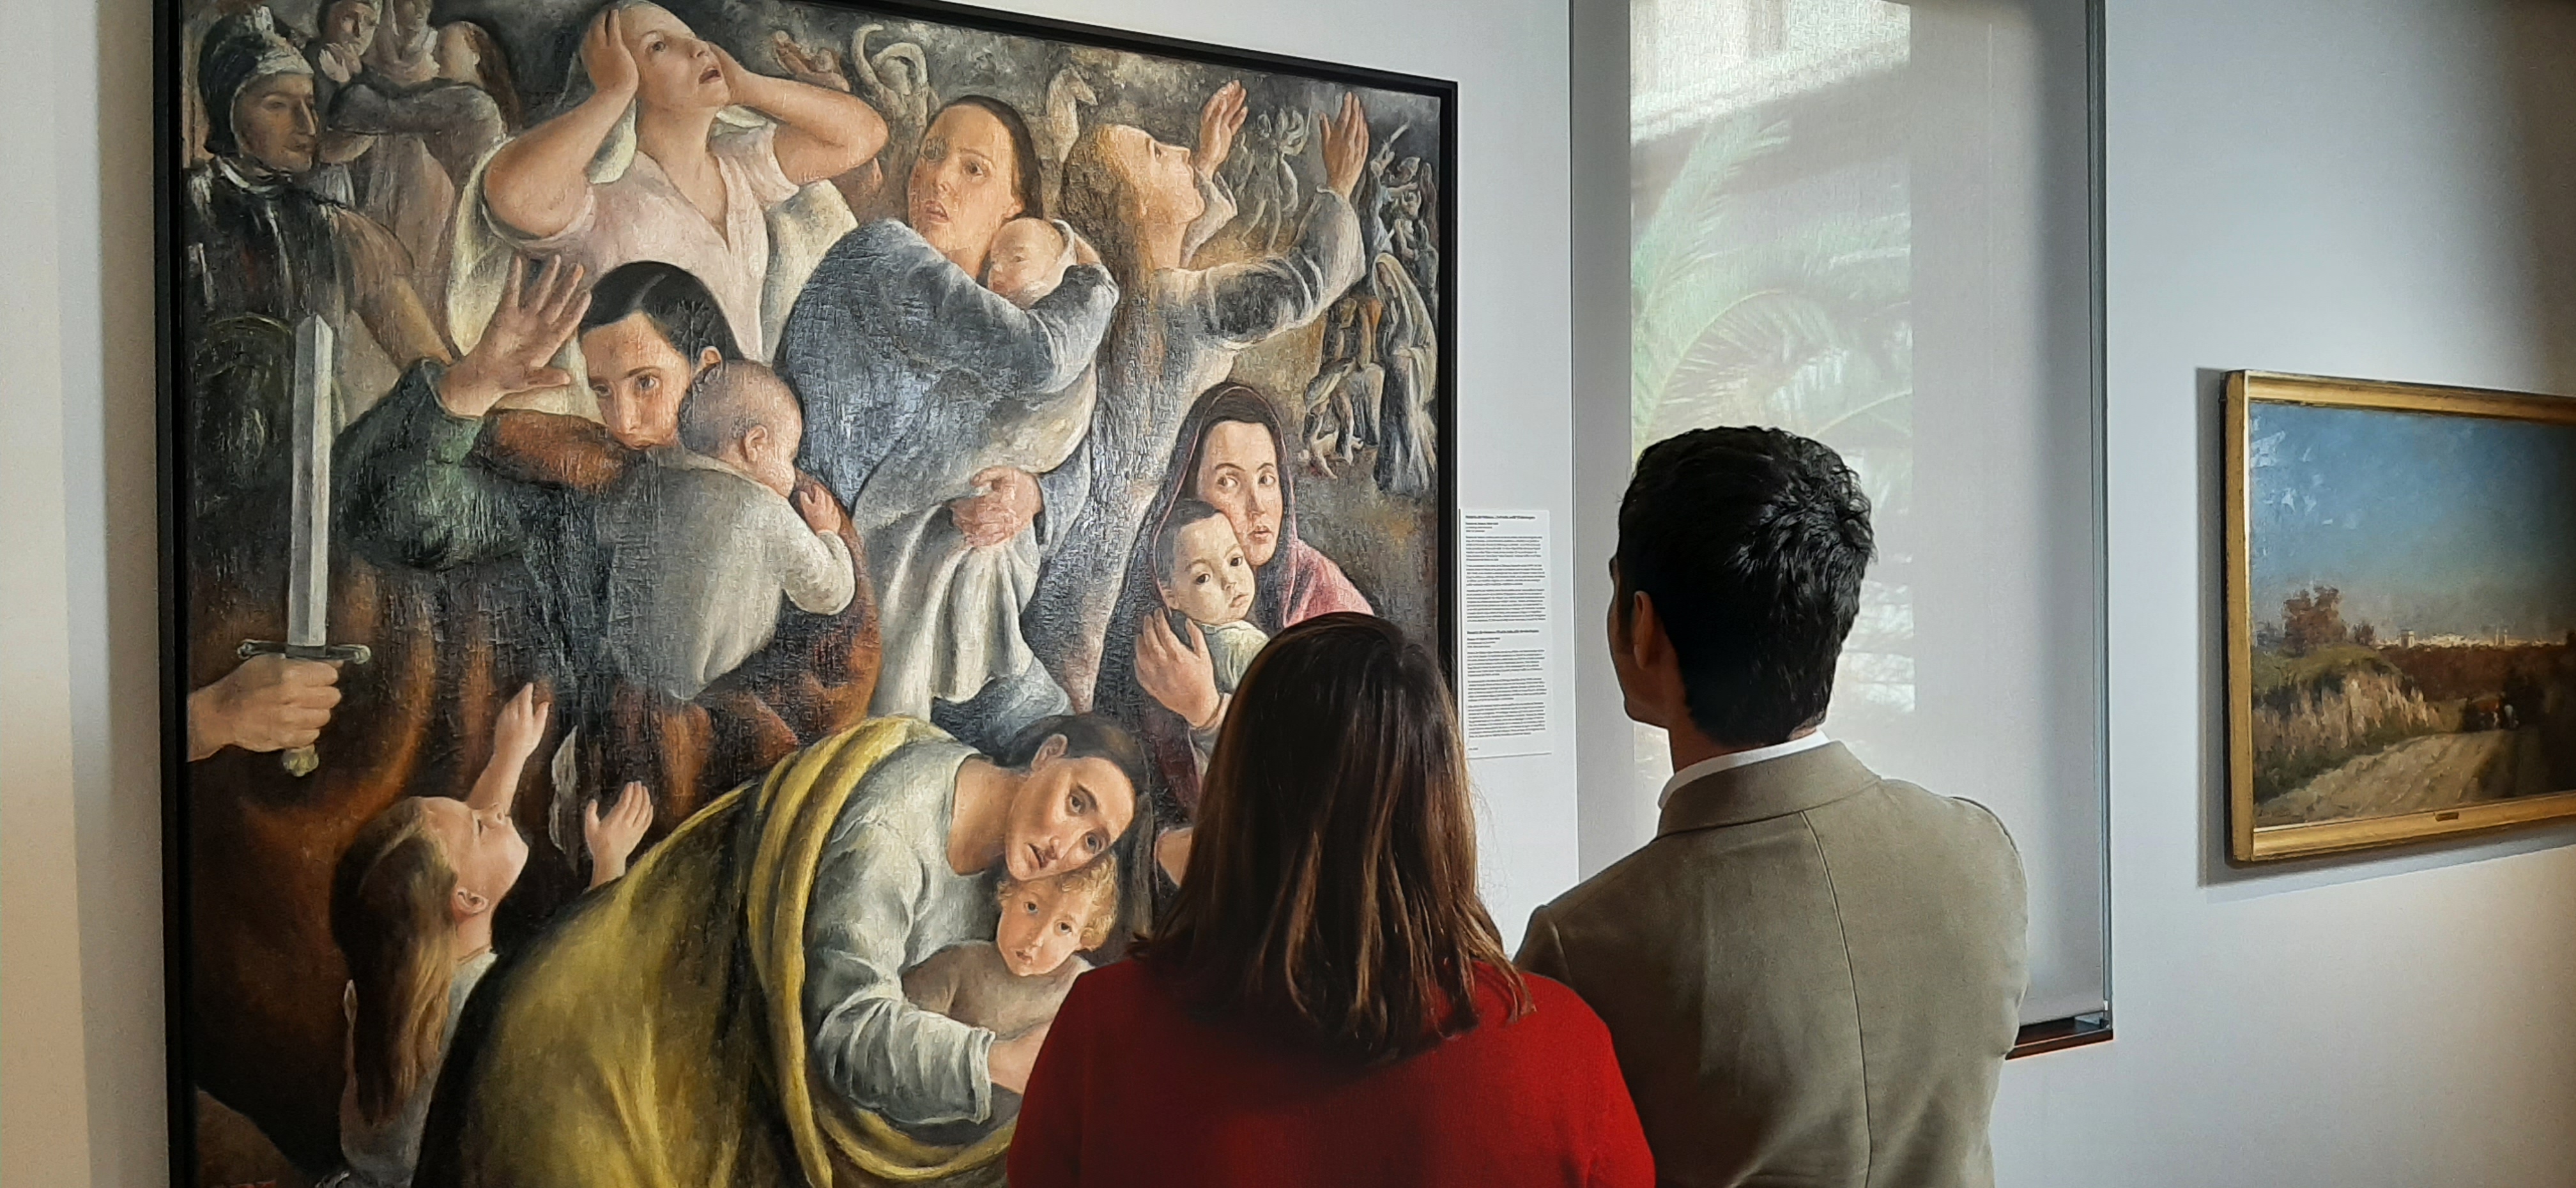 Les dones artistes ja tenen espai propi en el Museu de Belles Arts de València